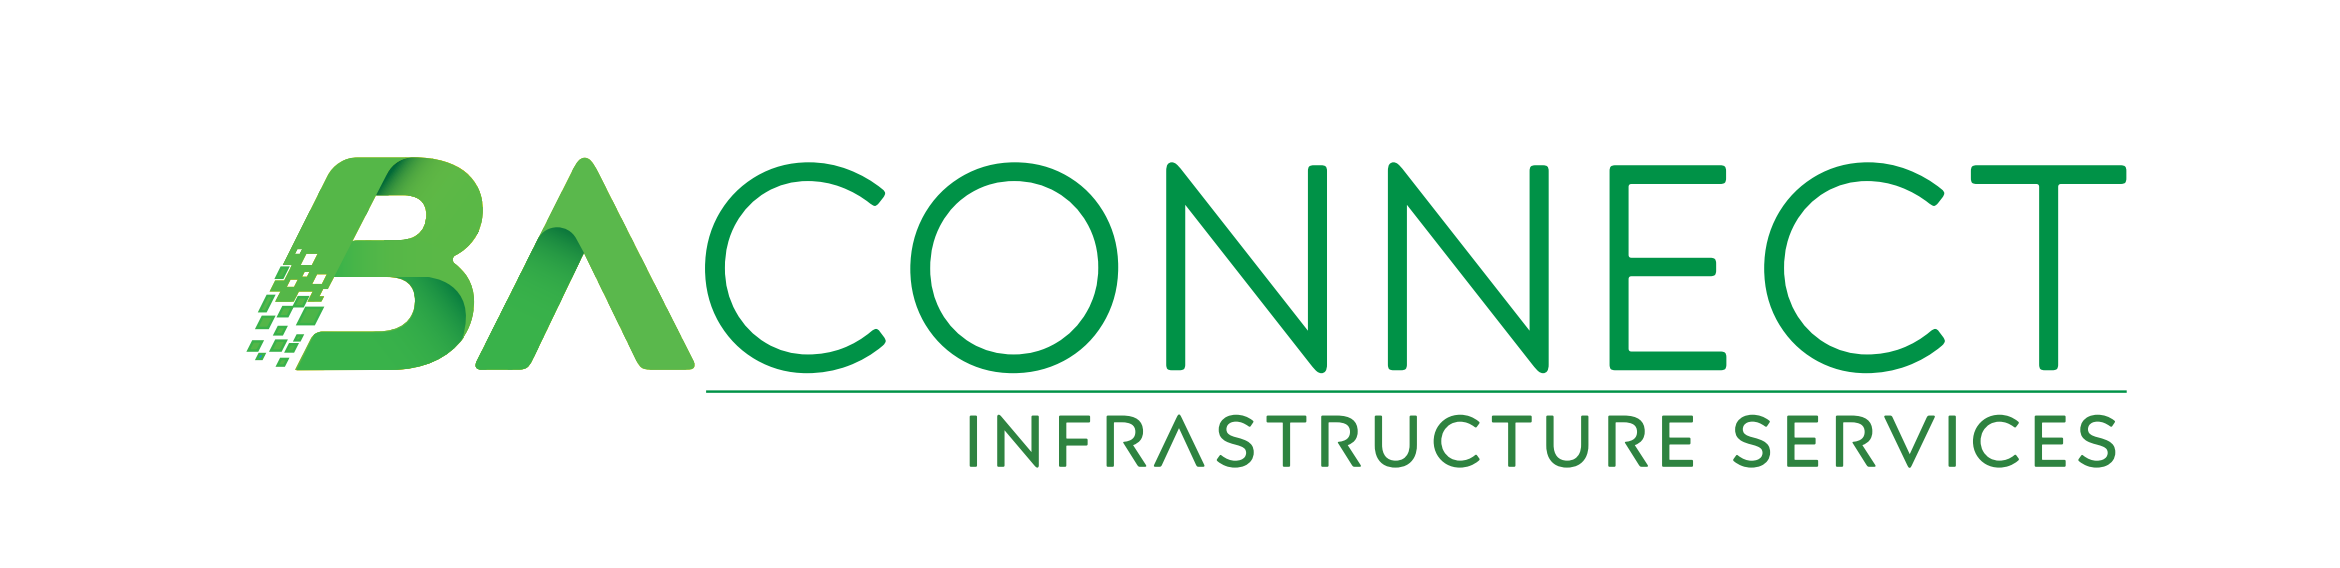 IT Infrastruktur für Bremen und Niedersachsen | baconnect